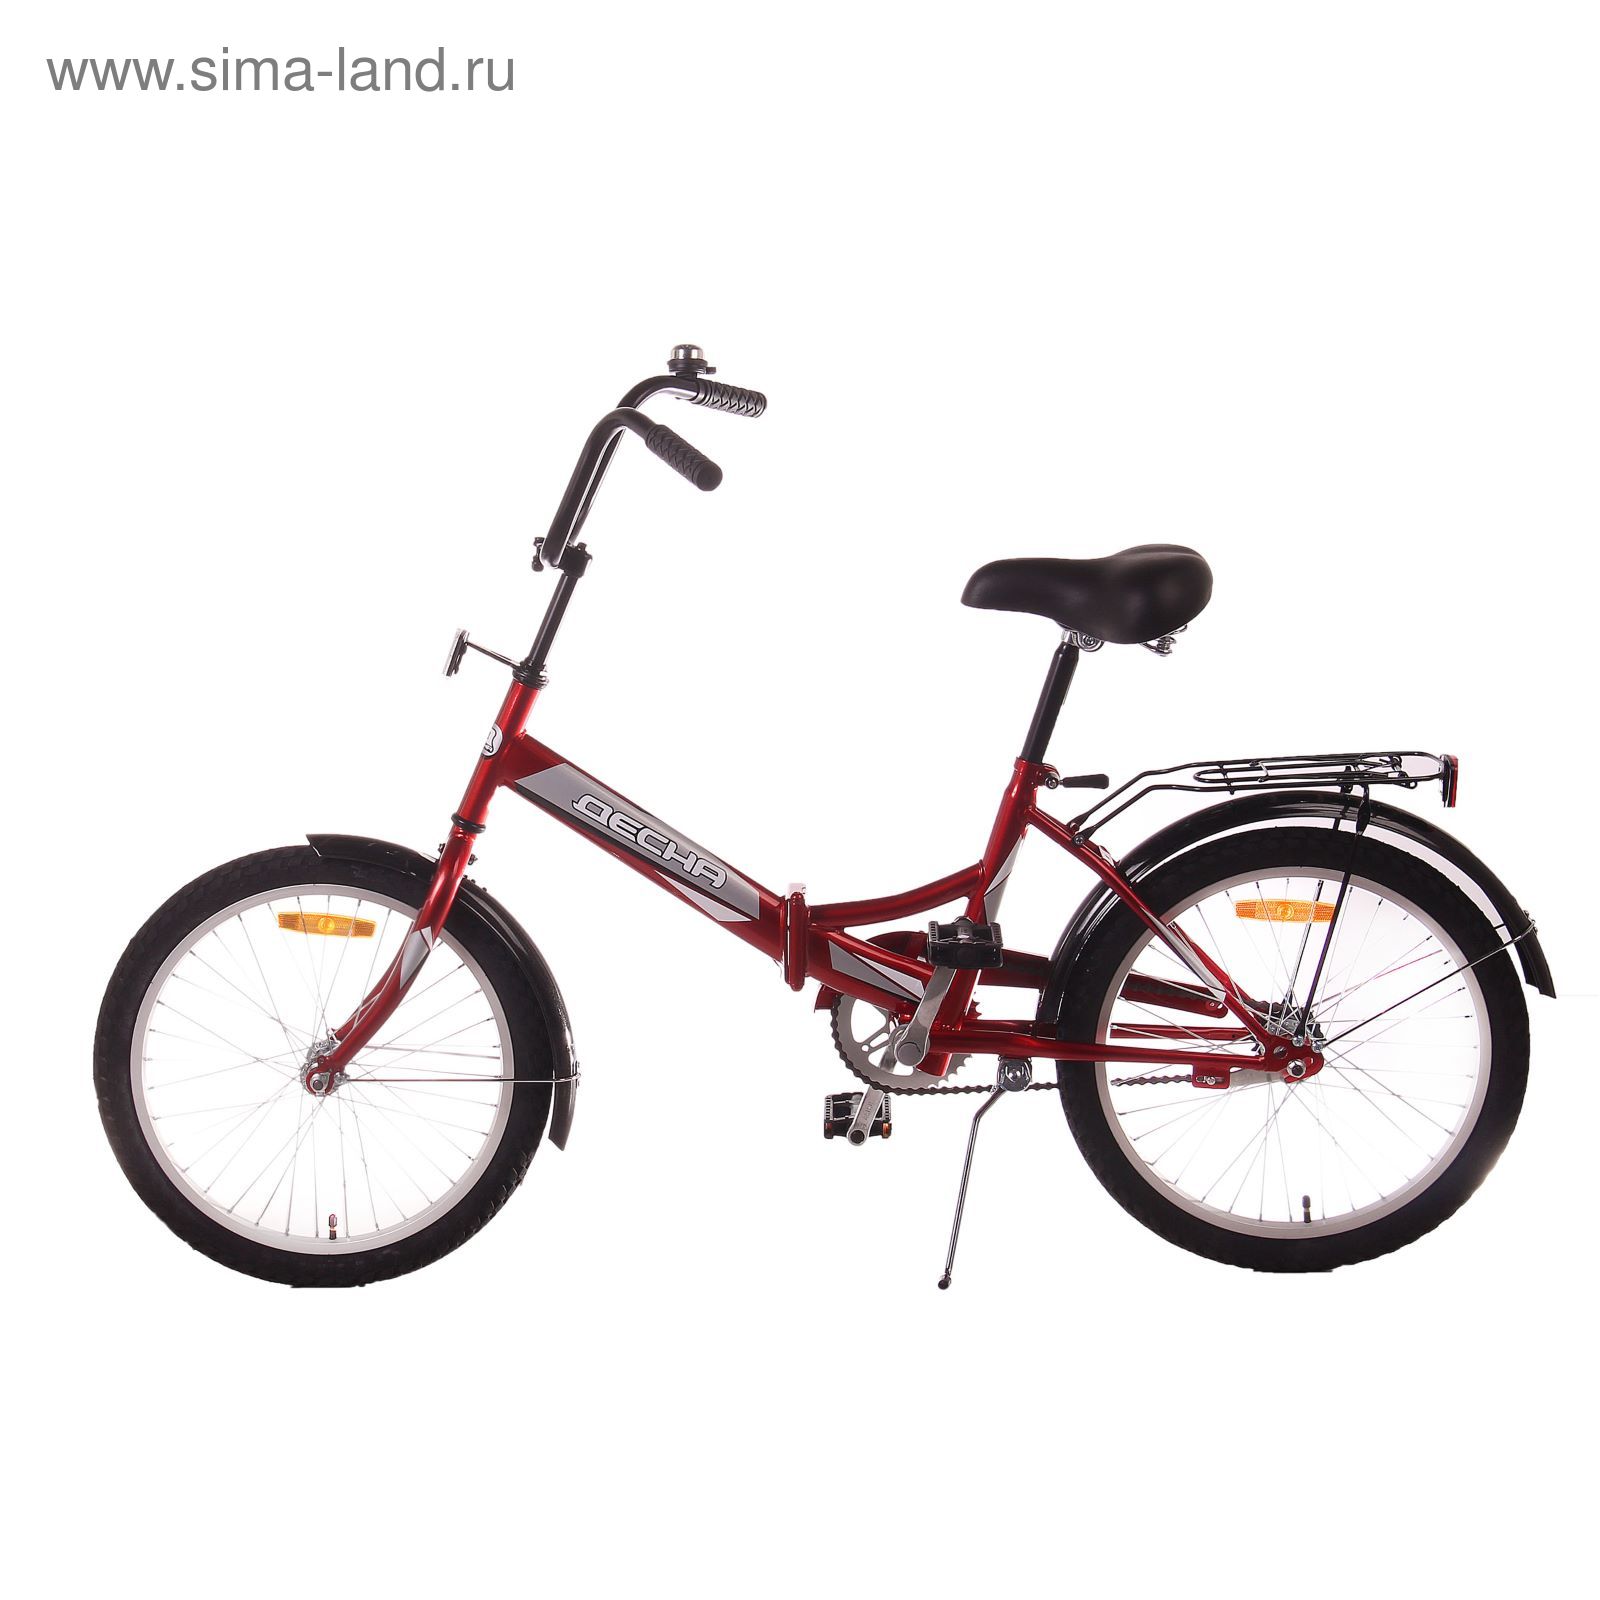 Велосипед 20" Десна-2200 Z010, 2017, цвет красный, размер 13"